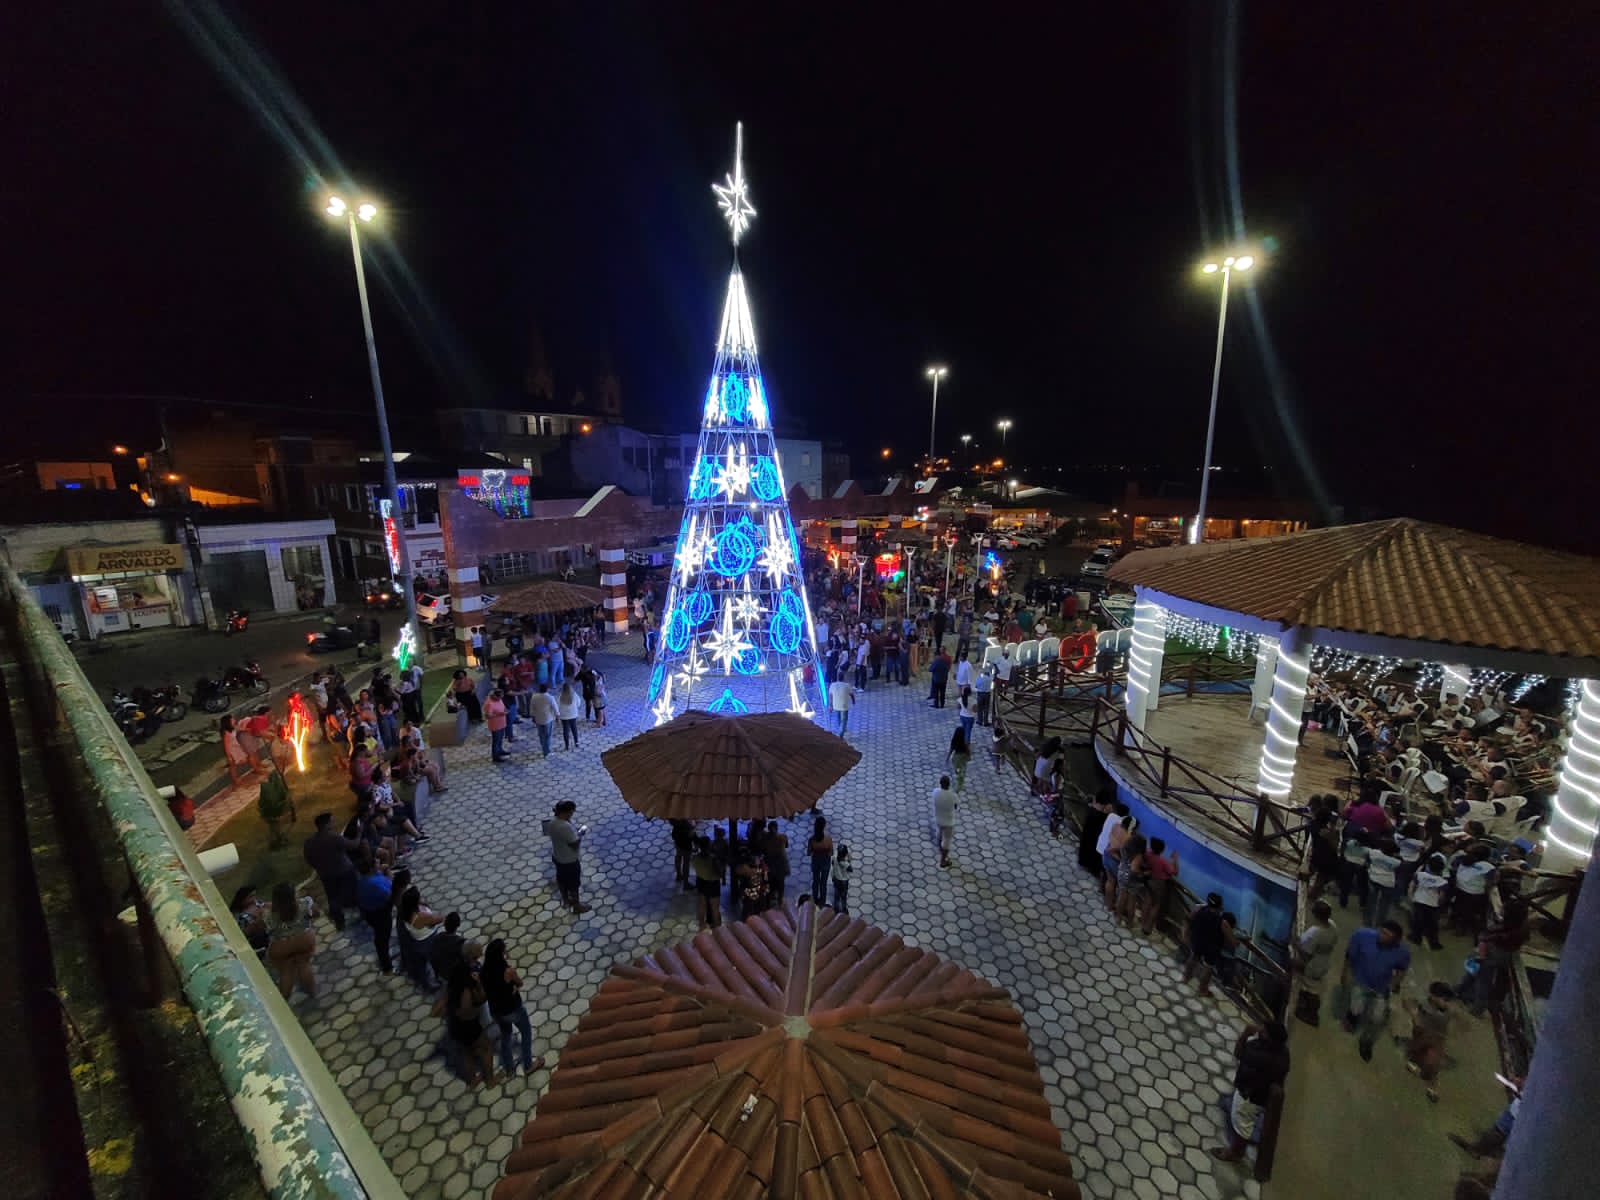 Prefeitura inaugura decoração de natal com árvore de 14,5 metros |  Prefeitura Municipal de Propriá